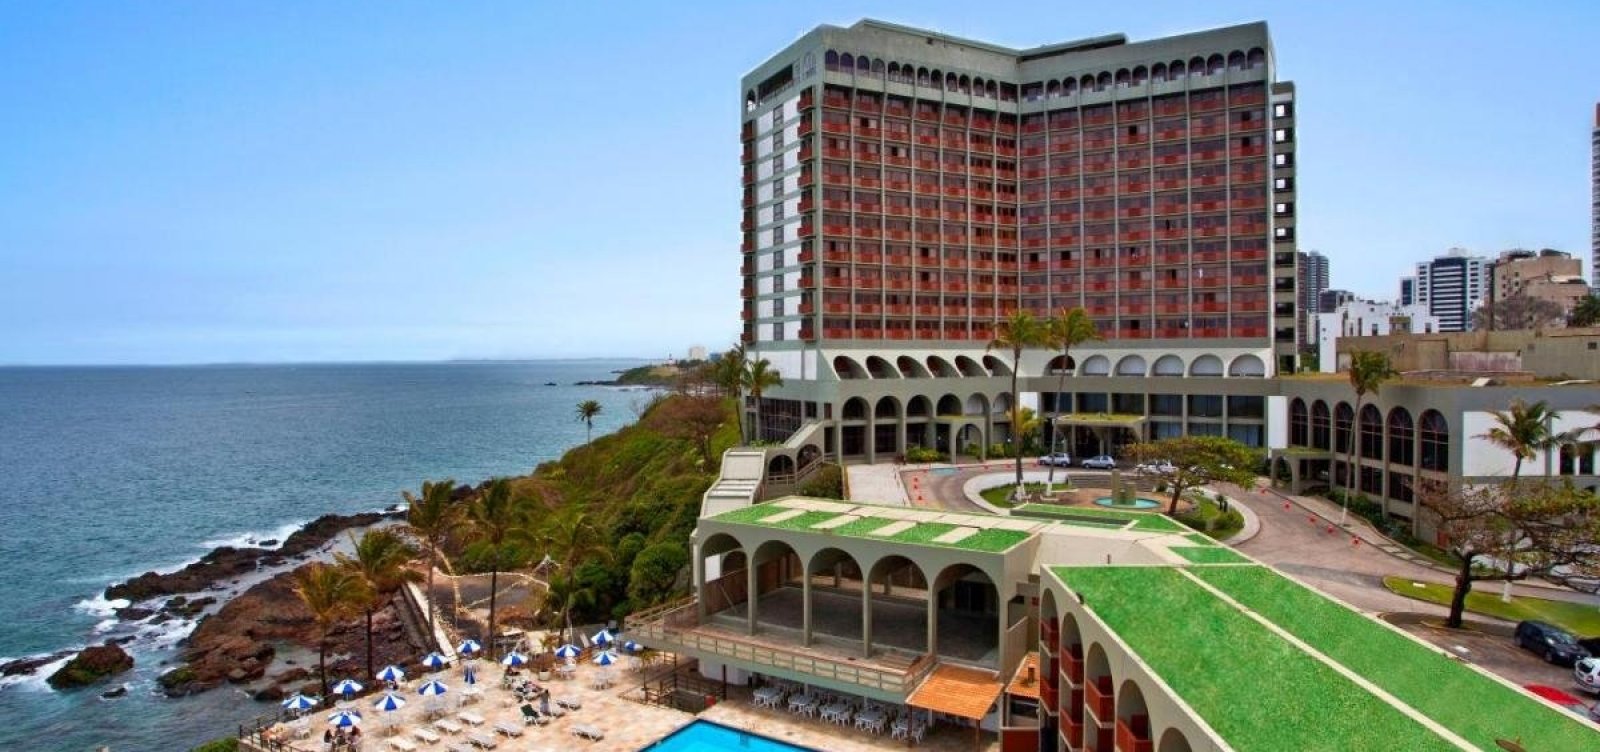 Tradicional hotel de Salvador, Othon fecha as portas em novembro